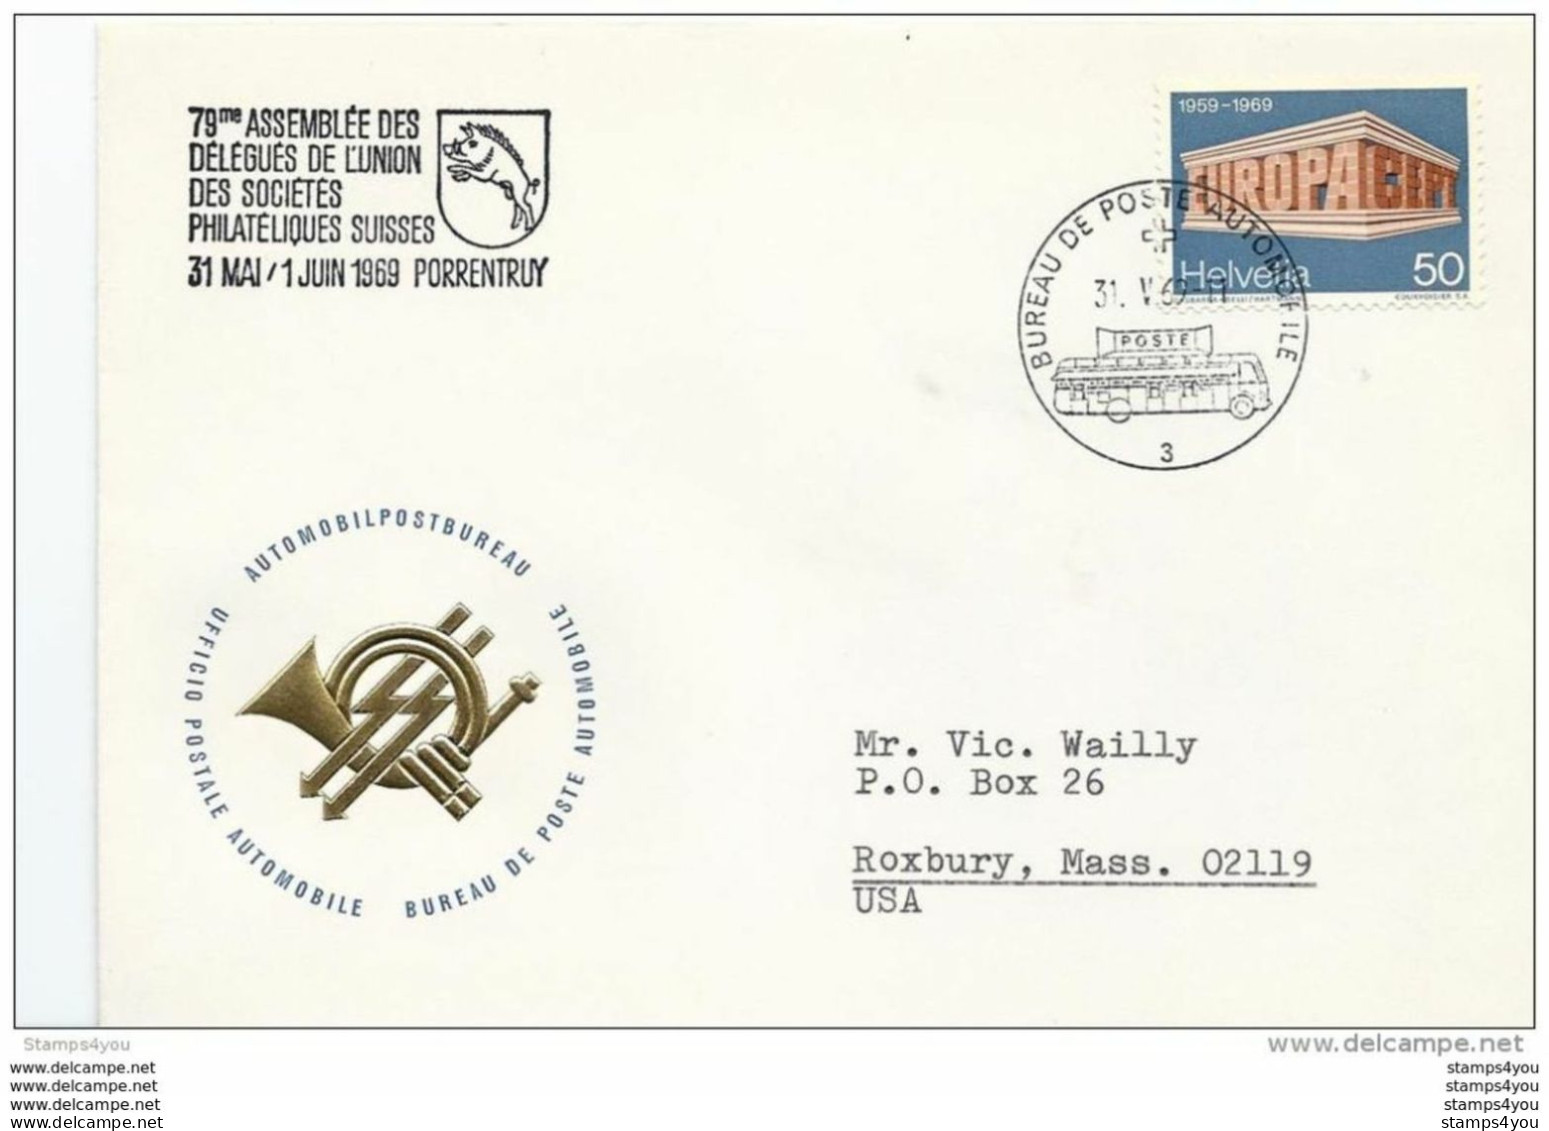 166 - 37 - Enveloppe Avec Oblit Spéciale "Assemblée De Délégués Porrentruy 1969" - Marcophilie